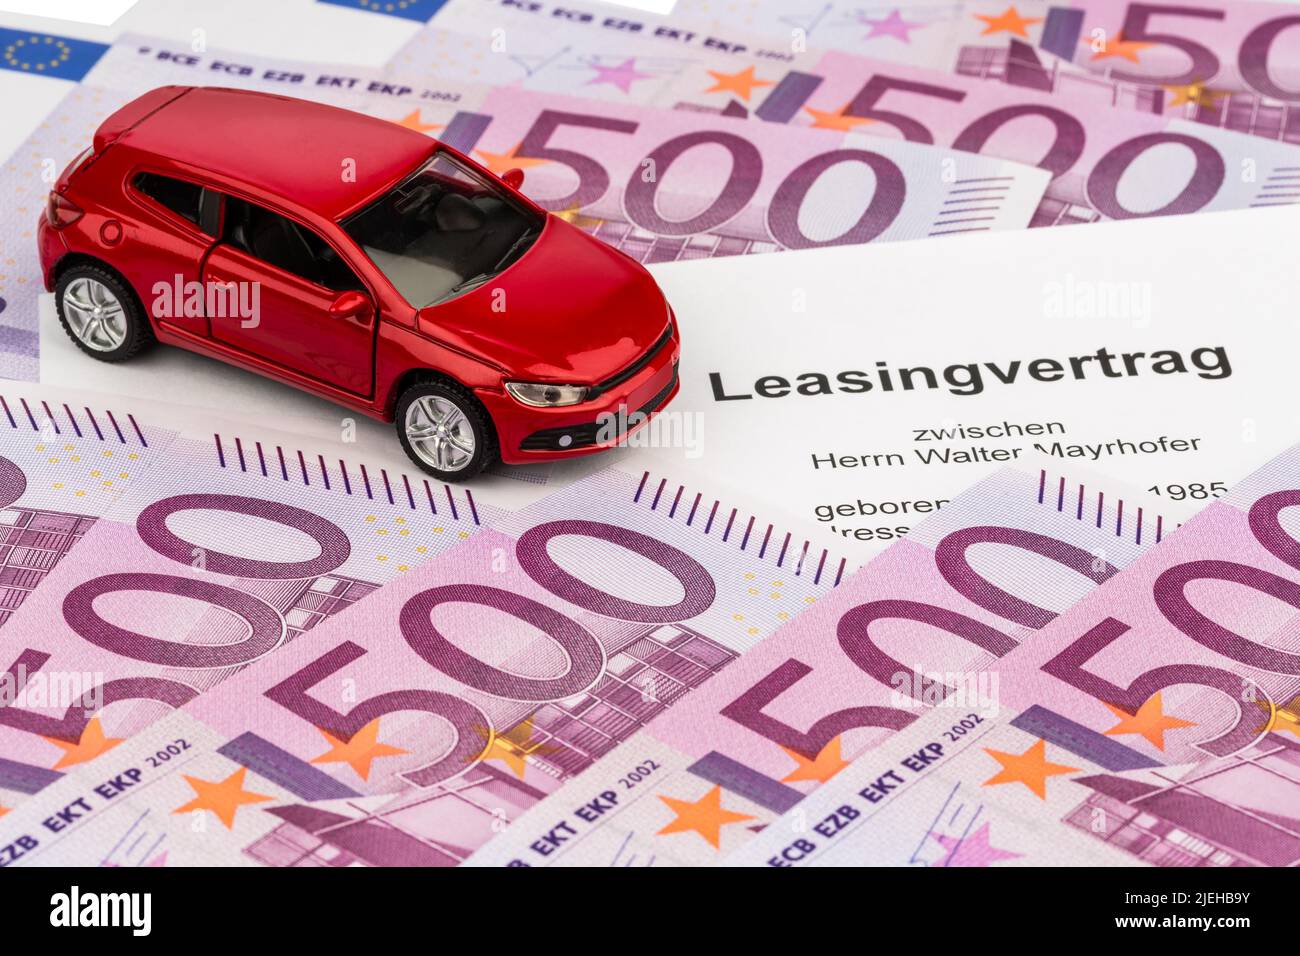 Ein Leasingvertrag, (Autoleasing), für ein neues Auto beim Autohändler, Kfz, PKW, Foto Stock